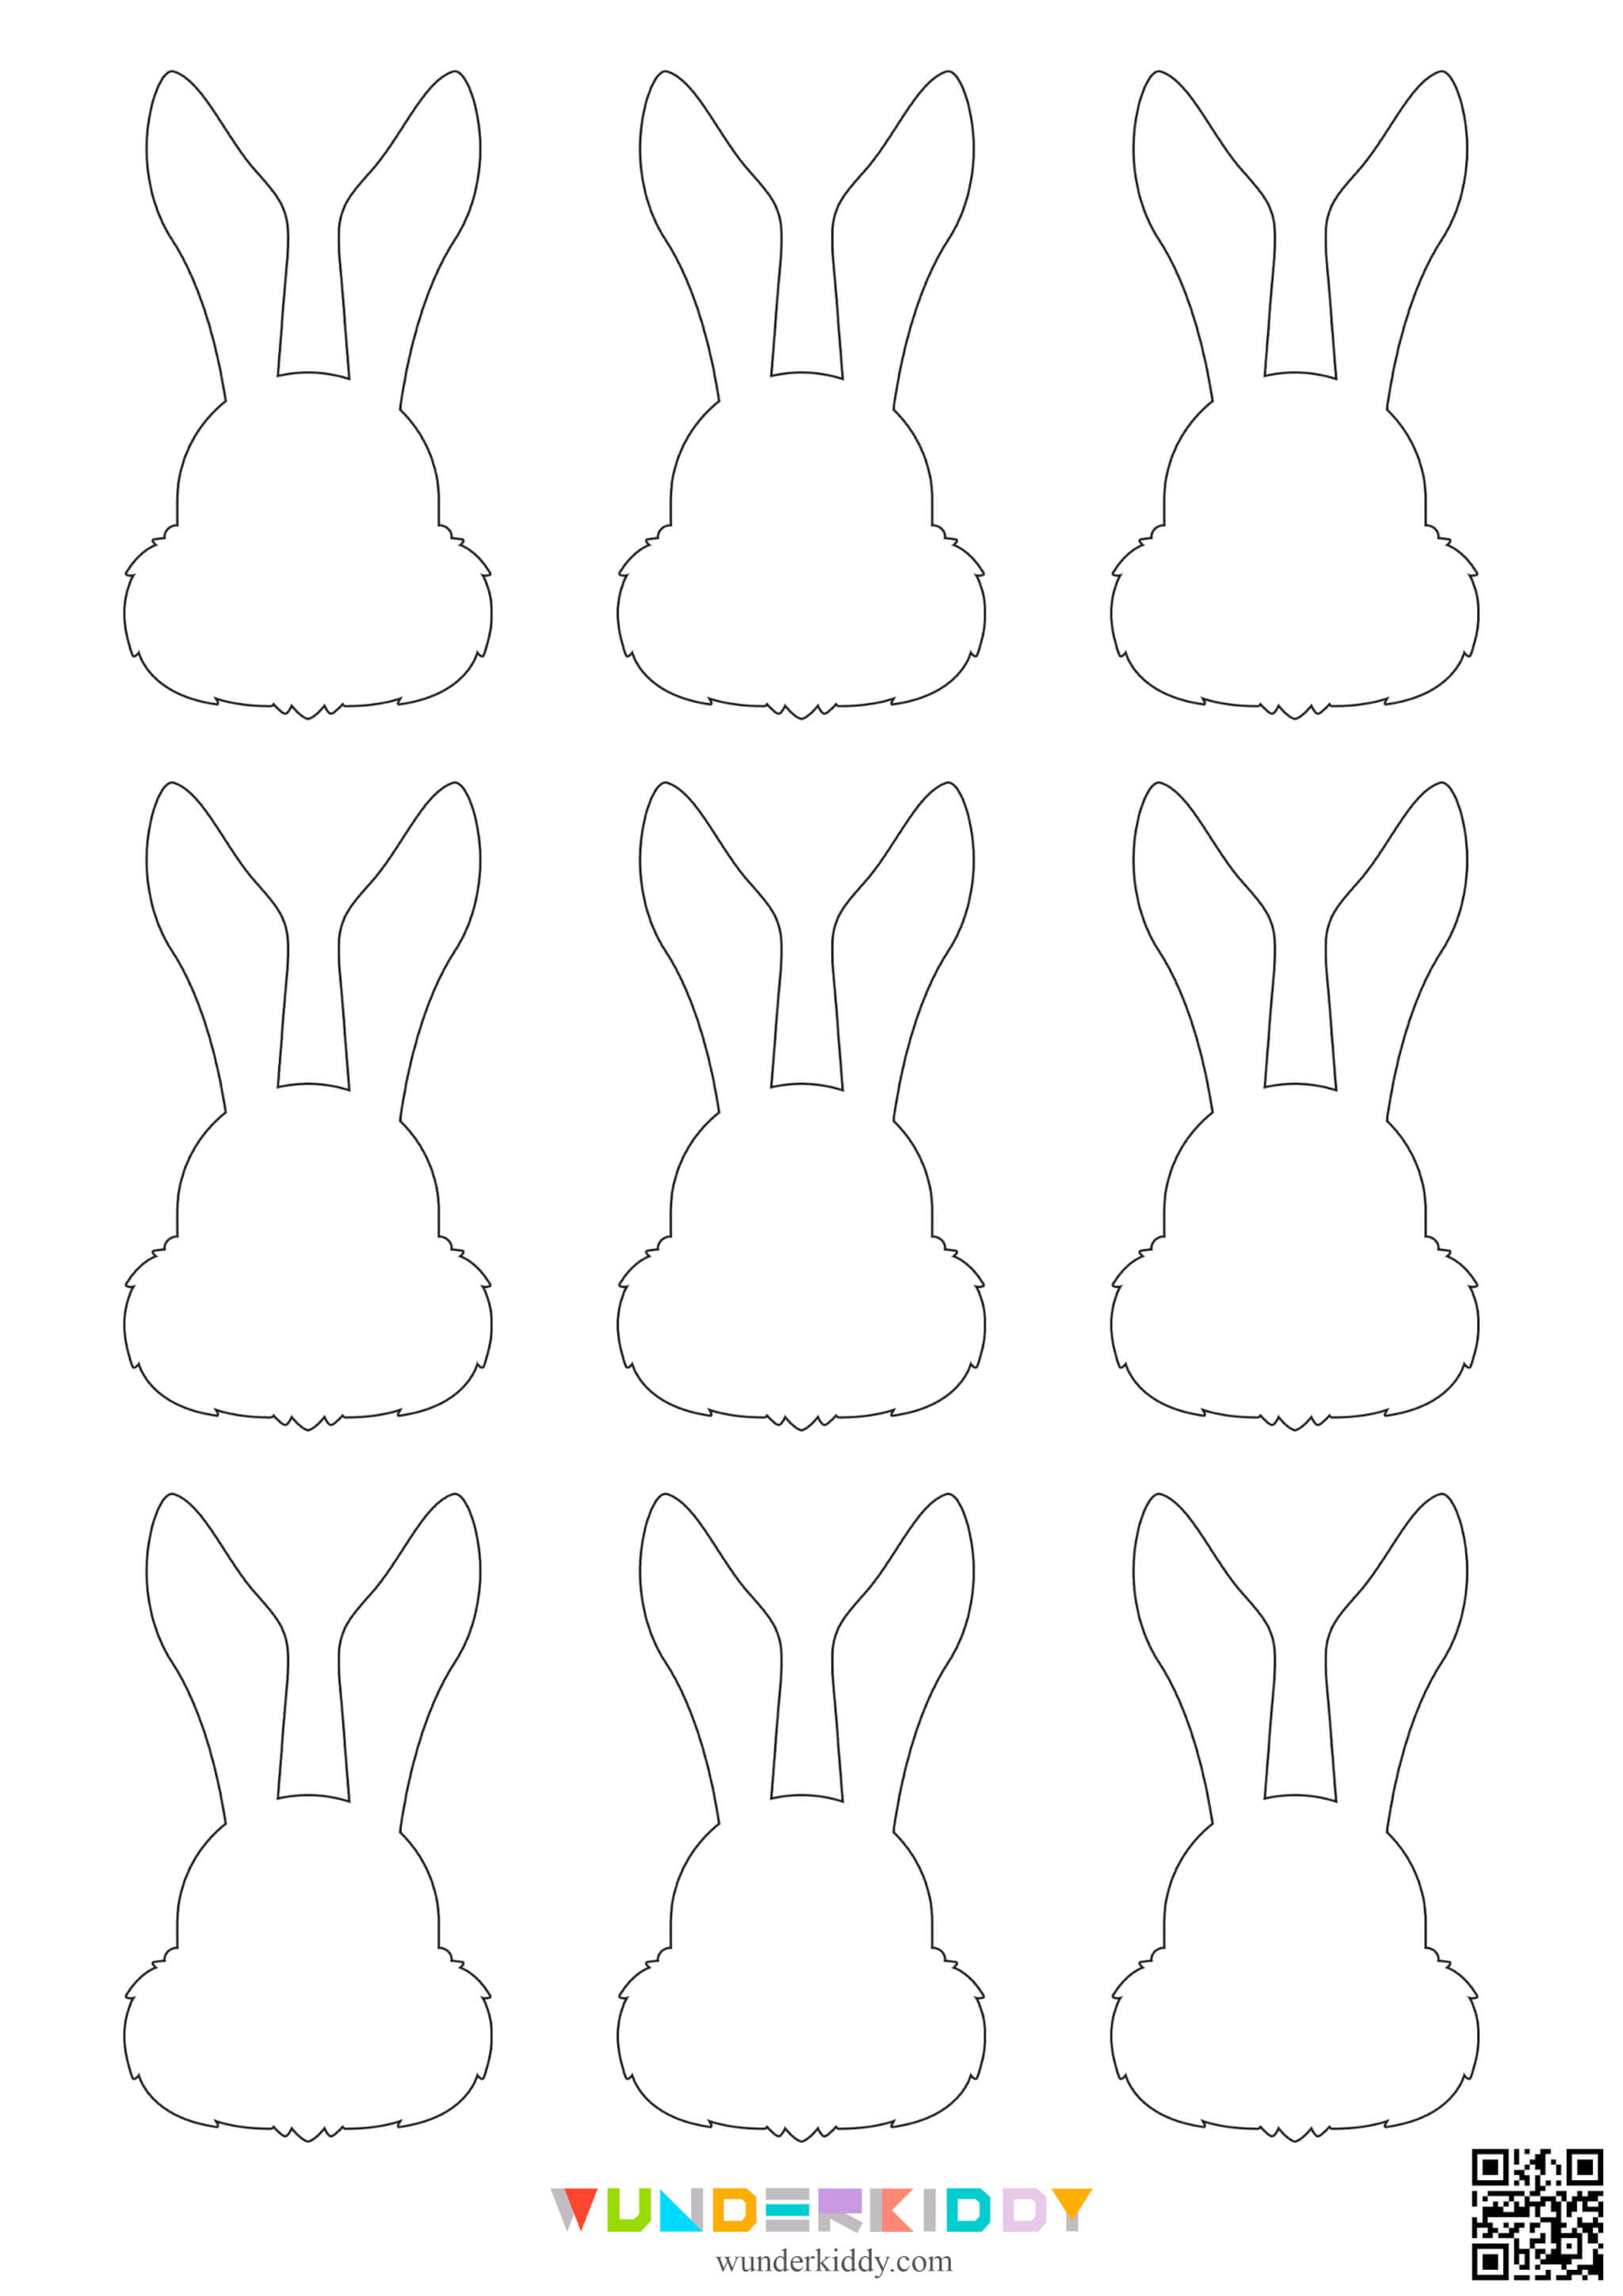 Printable Easter Bunny Template - Image 9